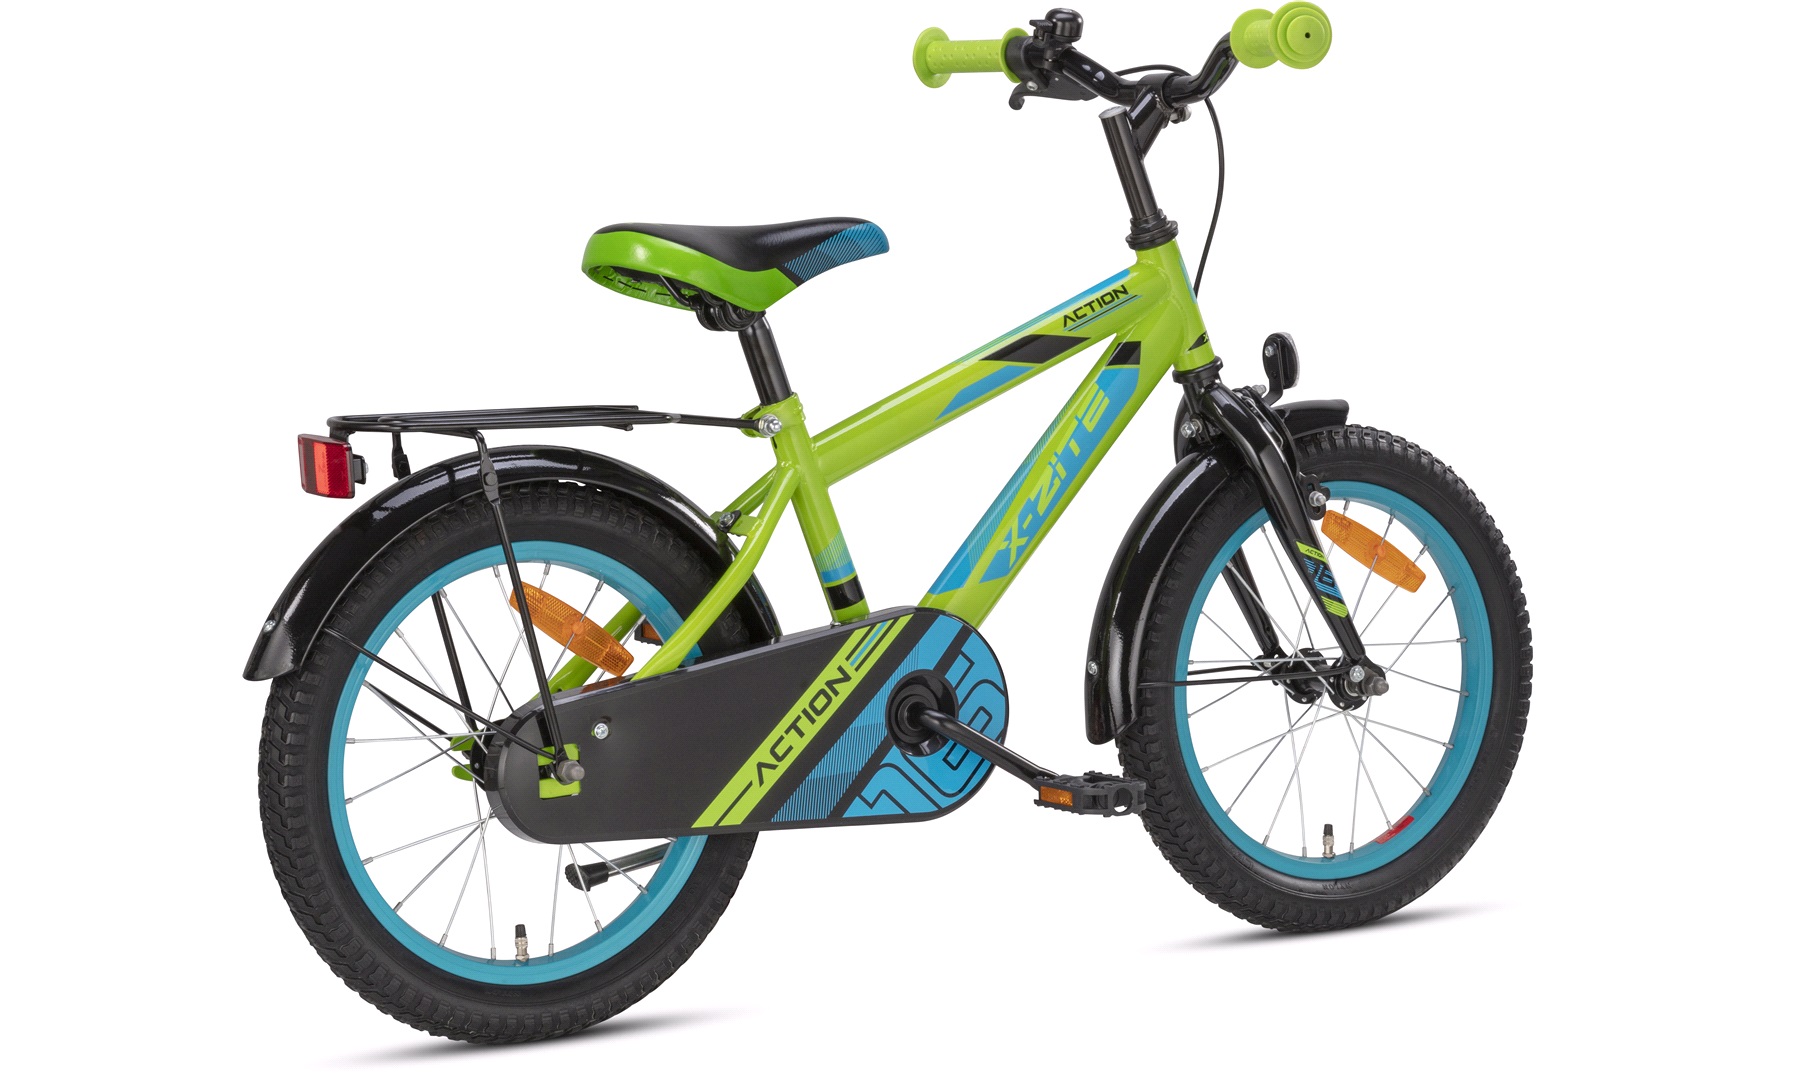 tæppe udgifterne procedure Drengecykel 16" grøn/blå Action - Børnecykler 12-18 tommer hjul, cykler til  børn fra 1-6 år - thansen.dk